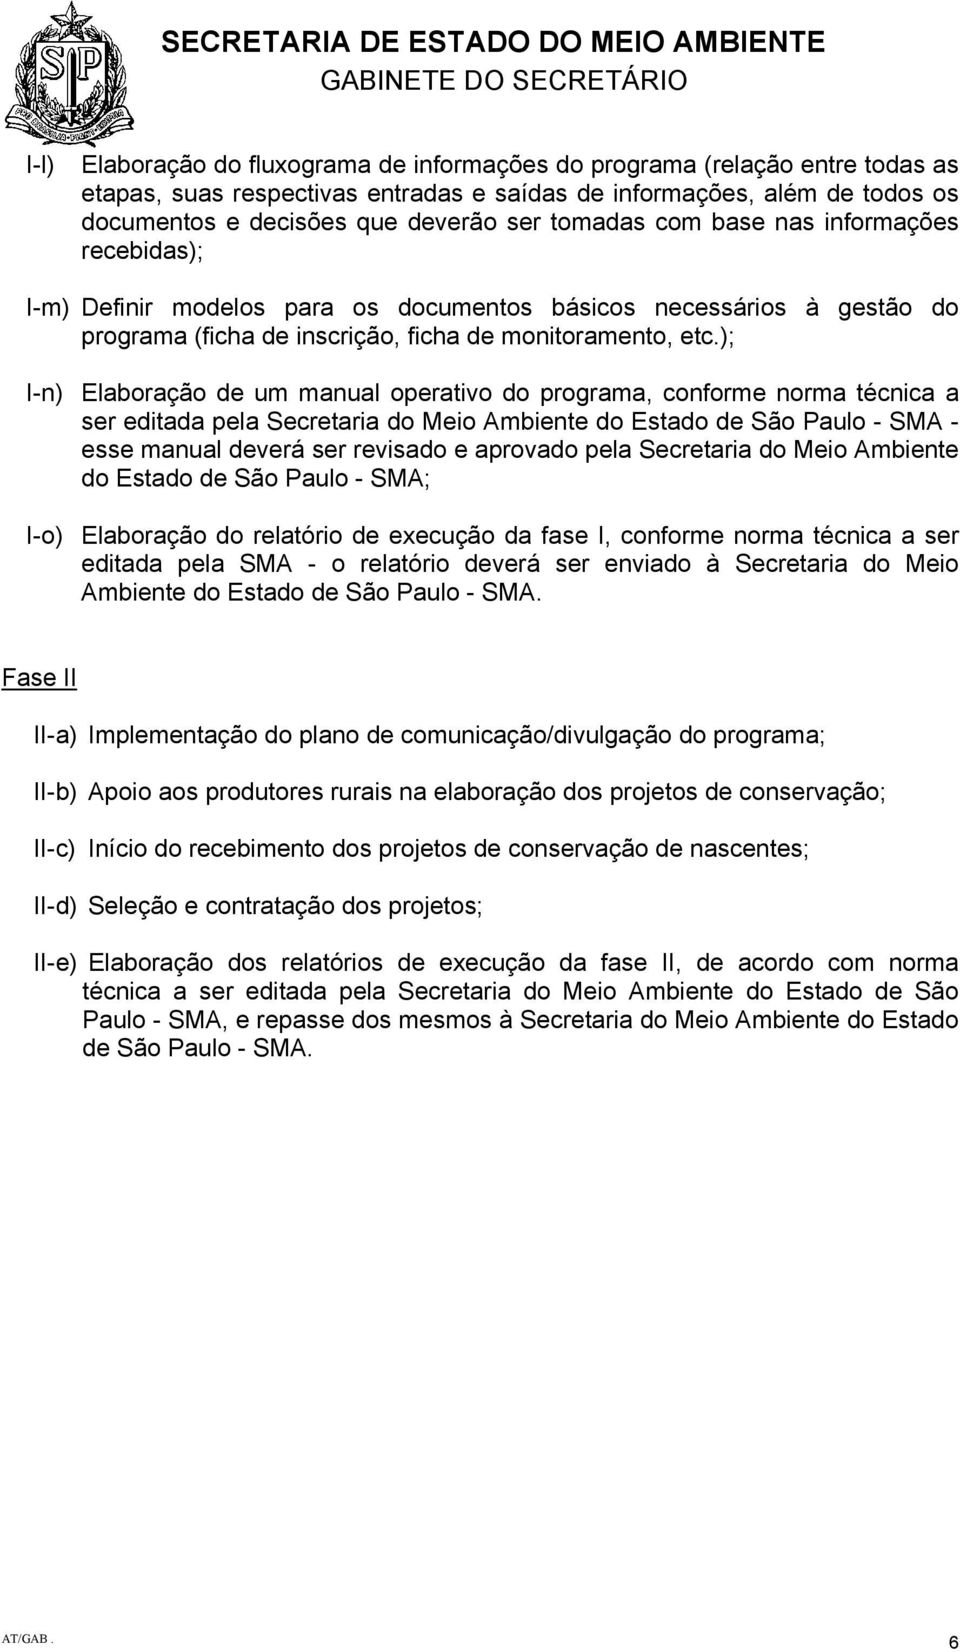 ); I-n) Elaboração de um manual operativo do programa, conforme norma técnica a ser editada pela Secretaria do Meio Ambiente do Estado de São Paulo - SMA - esse manual deverá ser revisado e aprovado